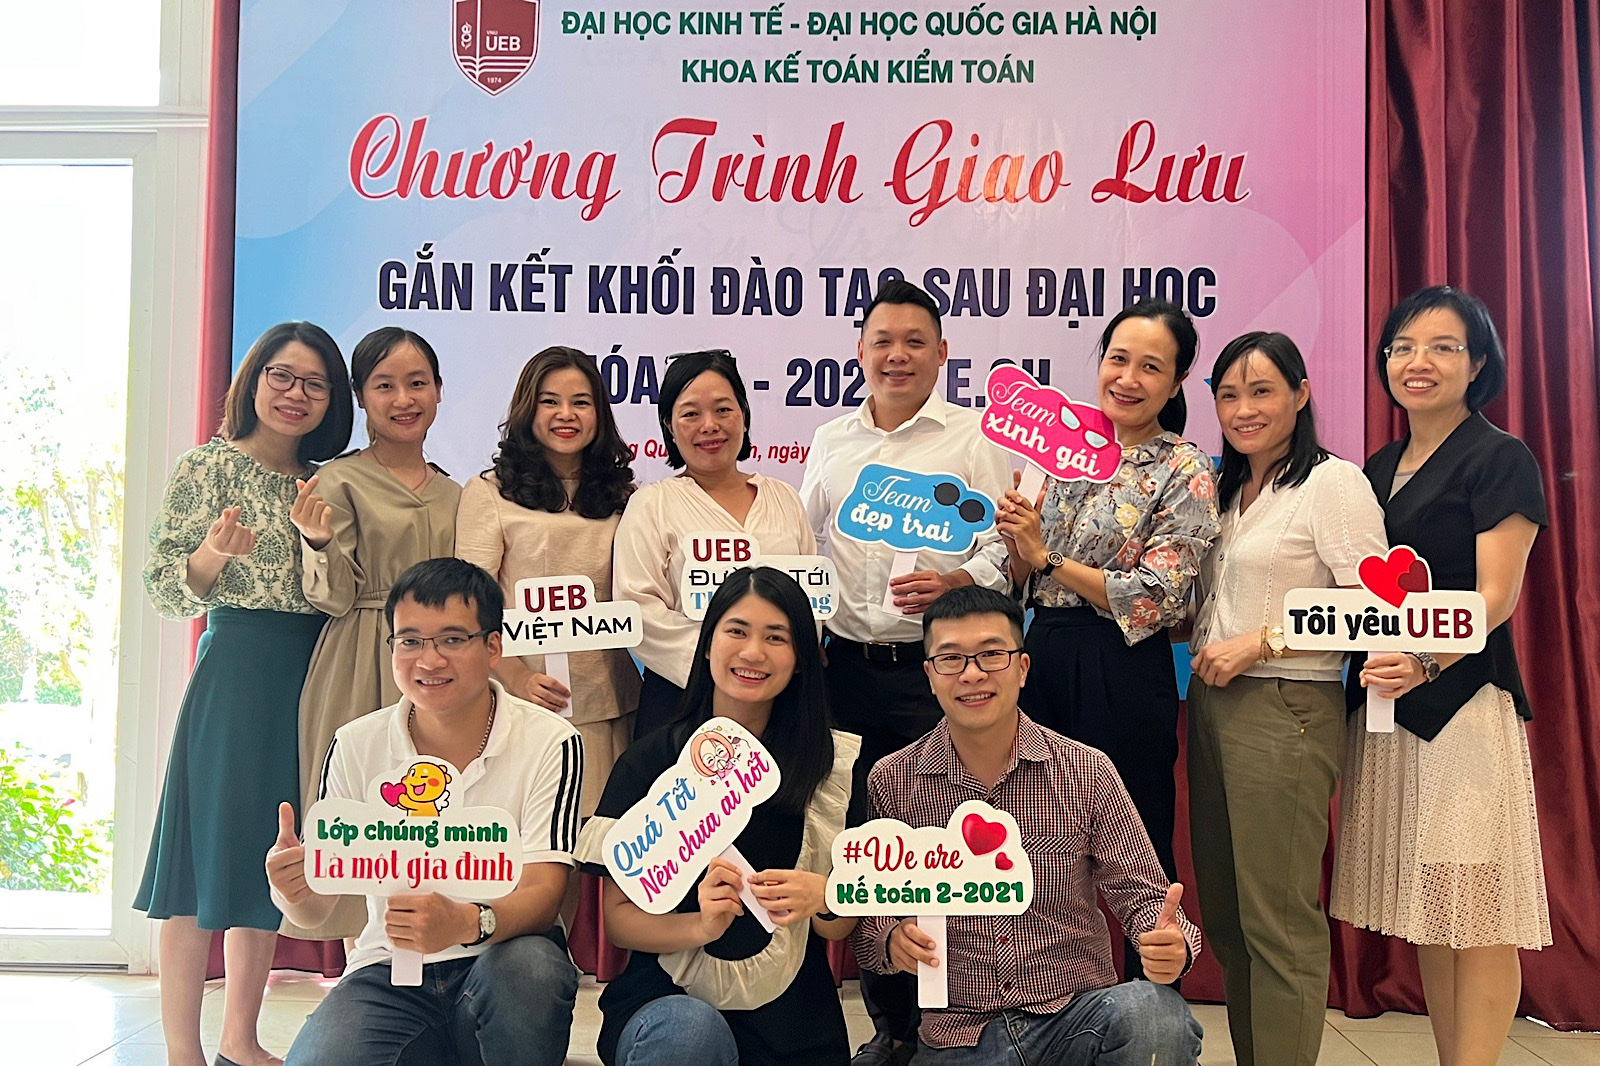 Khoa Kế toán Kiểm toán tổ chức chương trình tham quan, học tập kinh nghiệm tại Công ty TNHH Nippo Mechatronics (Việt Nam) cho học viên cao học kế toán khóa QH-2021 